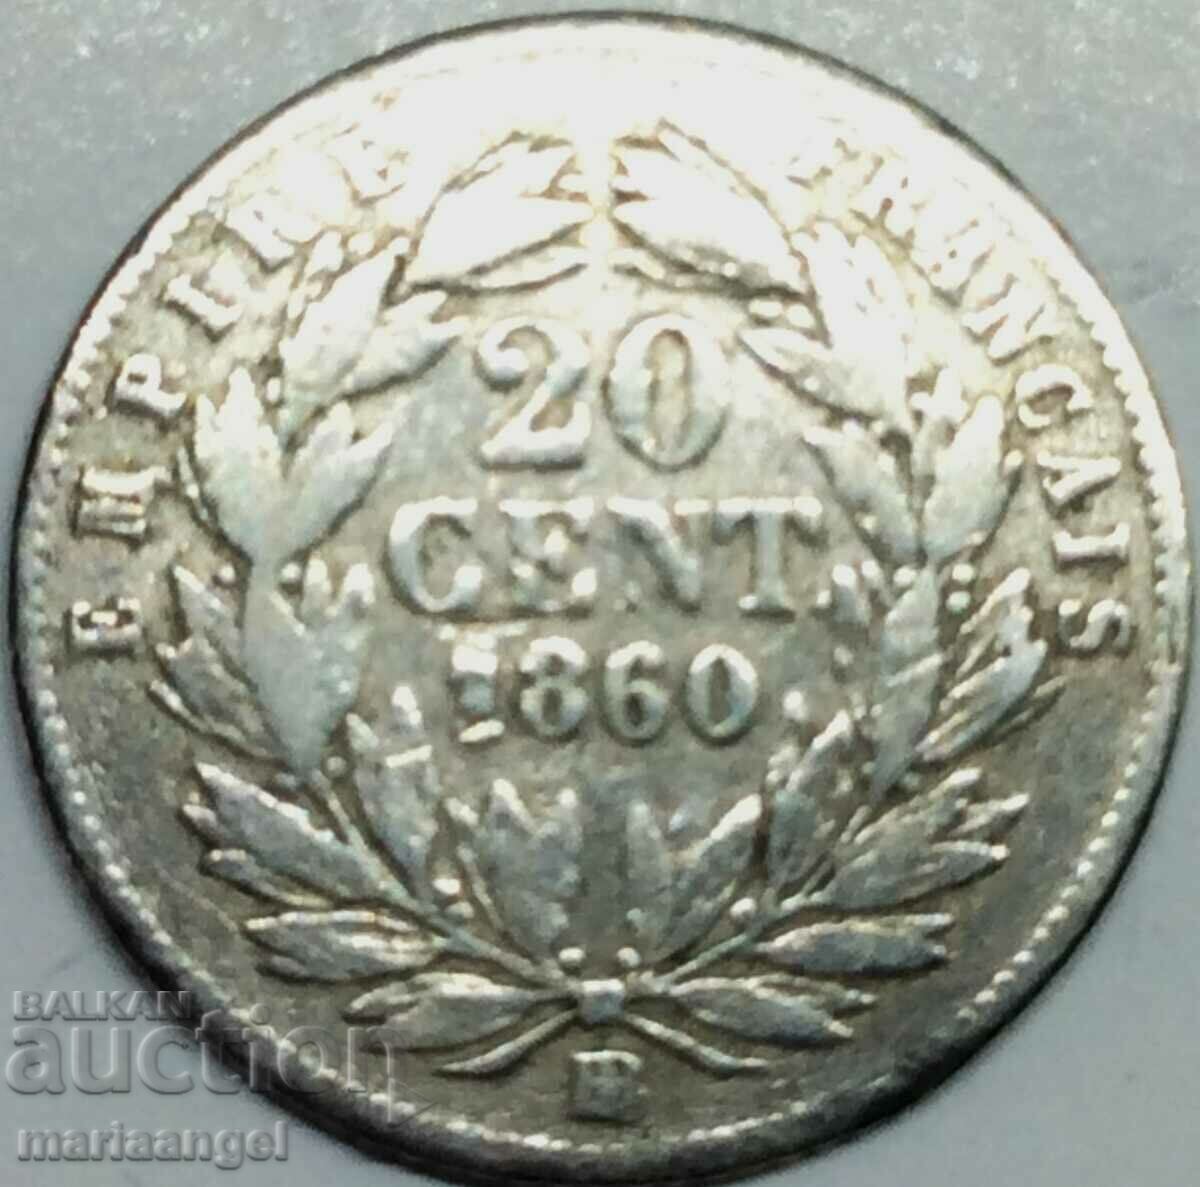 20 centimes 1860 France Napoleon III silver - quite rare